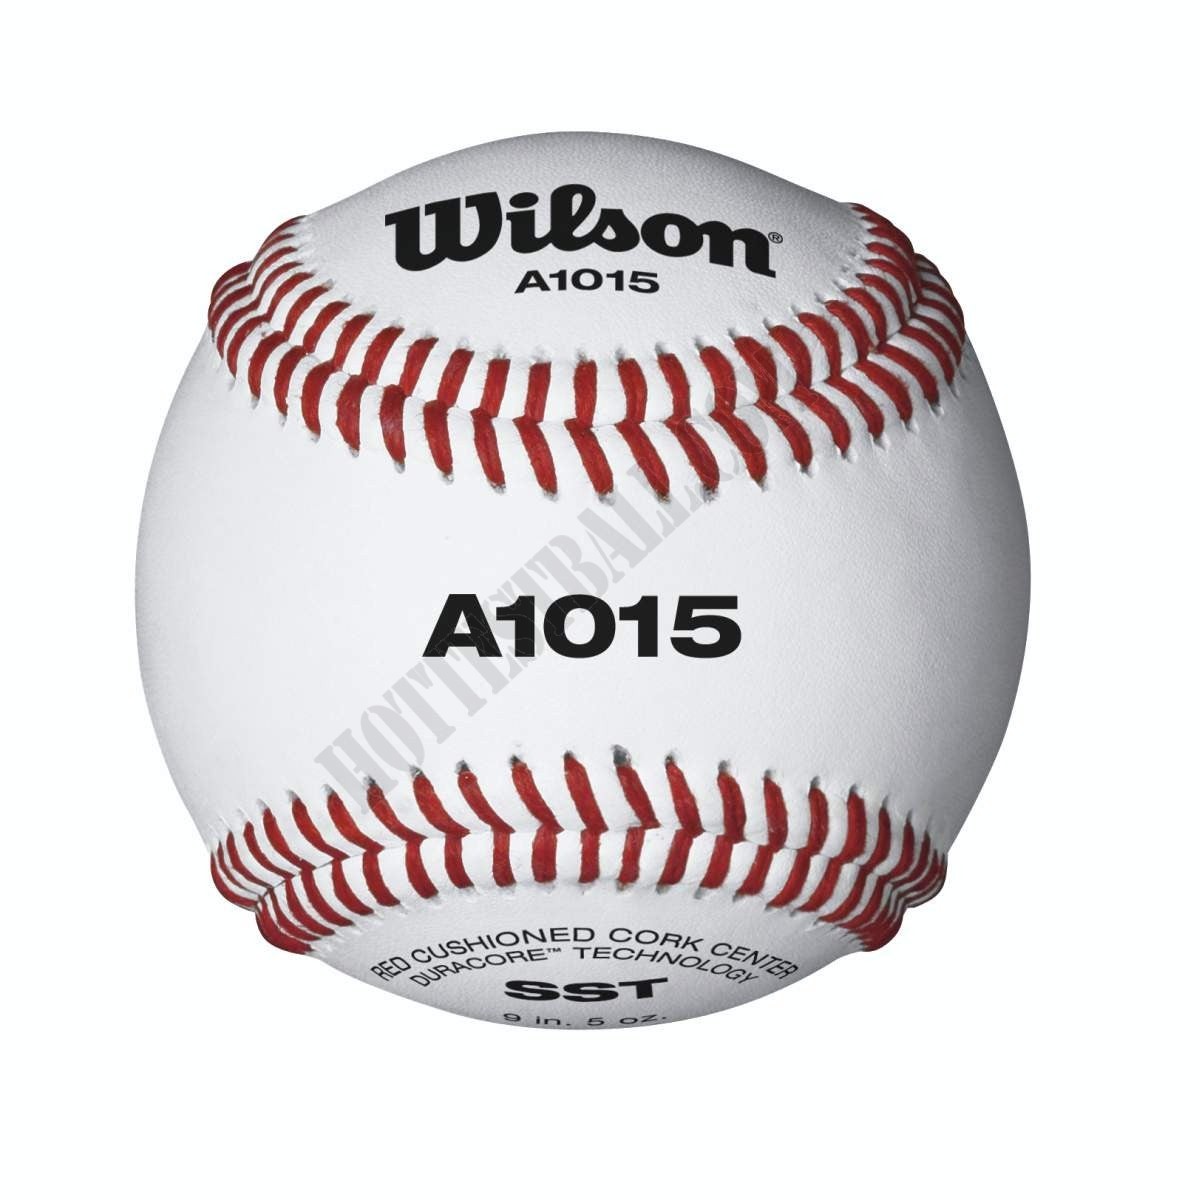 A1015 Pro Series SST Baseballs - Wilson Discount Store - A1015 Pro Series SST Baseballs - Wilson Discount Store